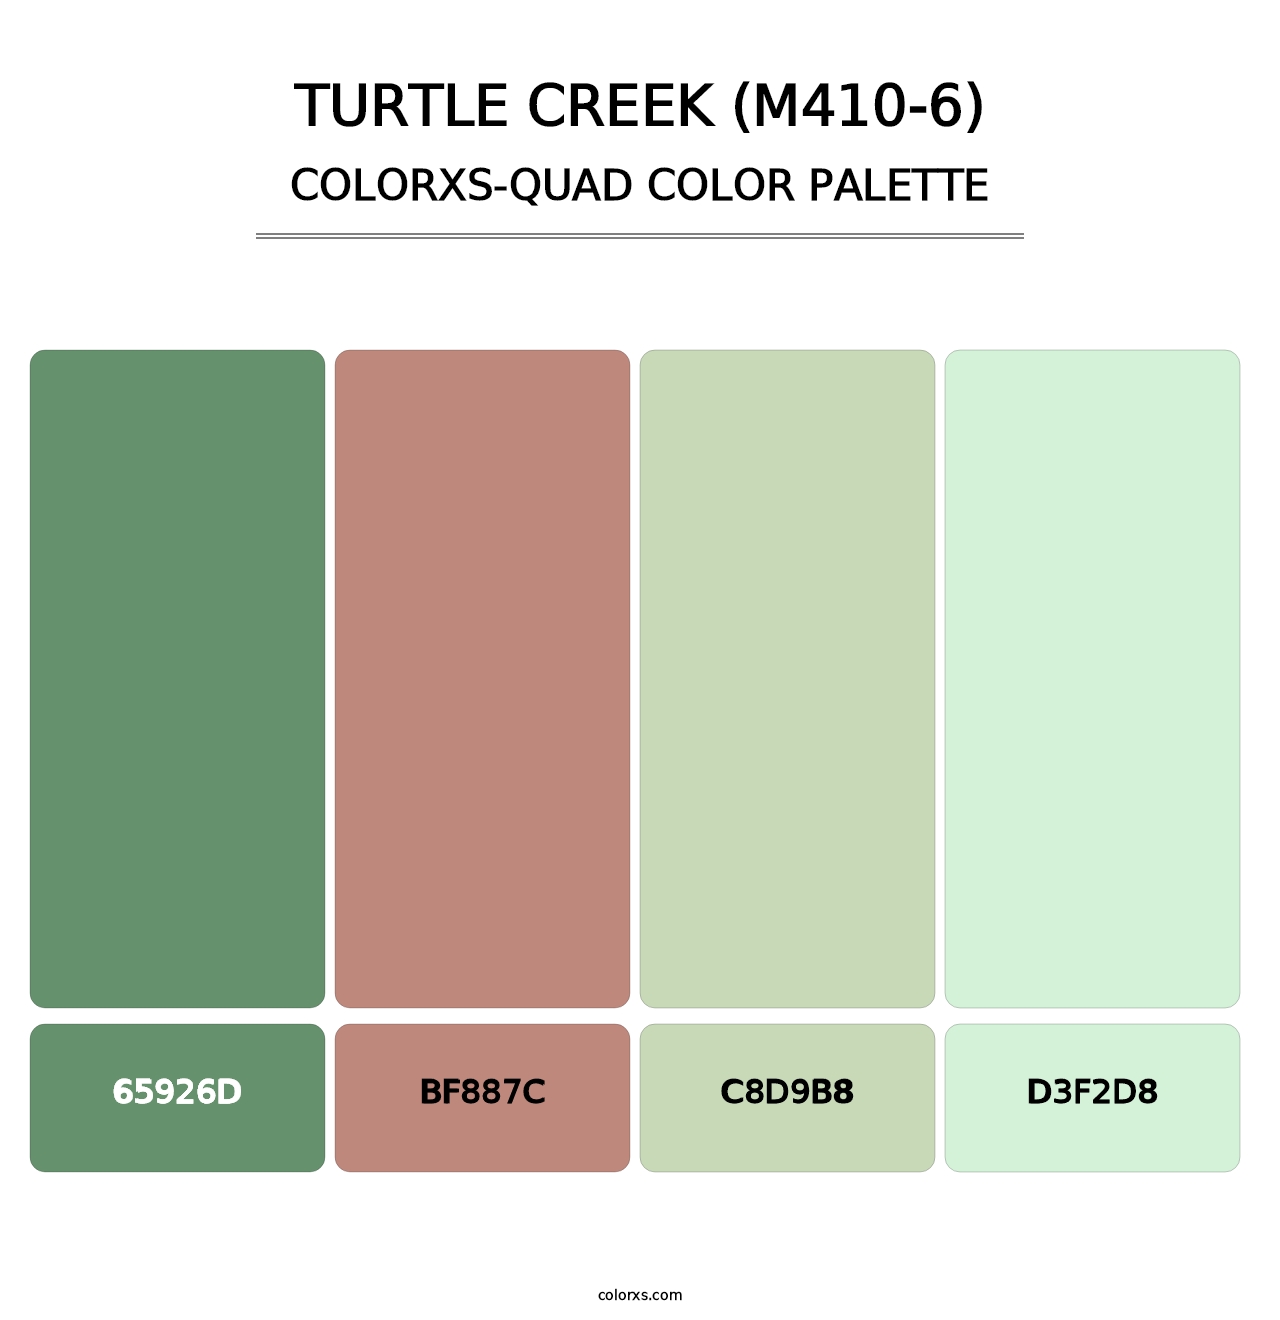 Turtle Creek (M410-6) - Colorxs Quad Palette